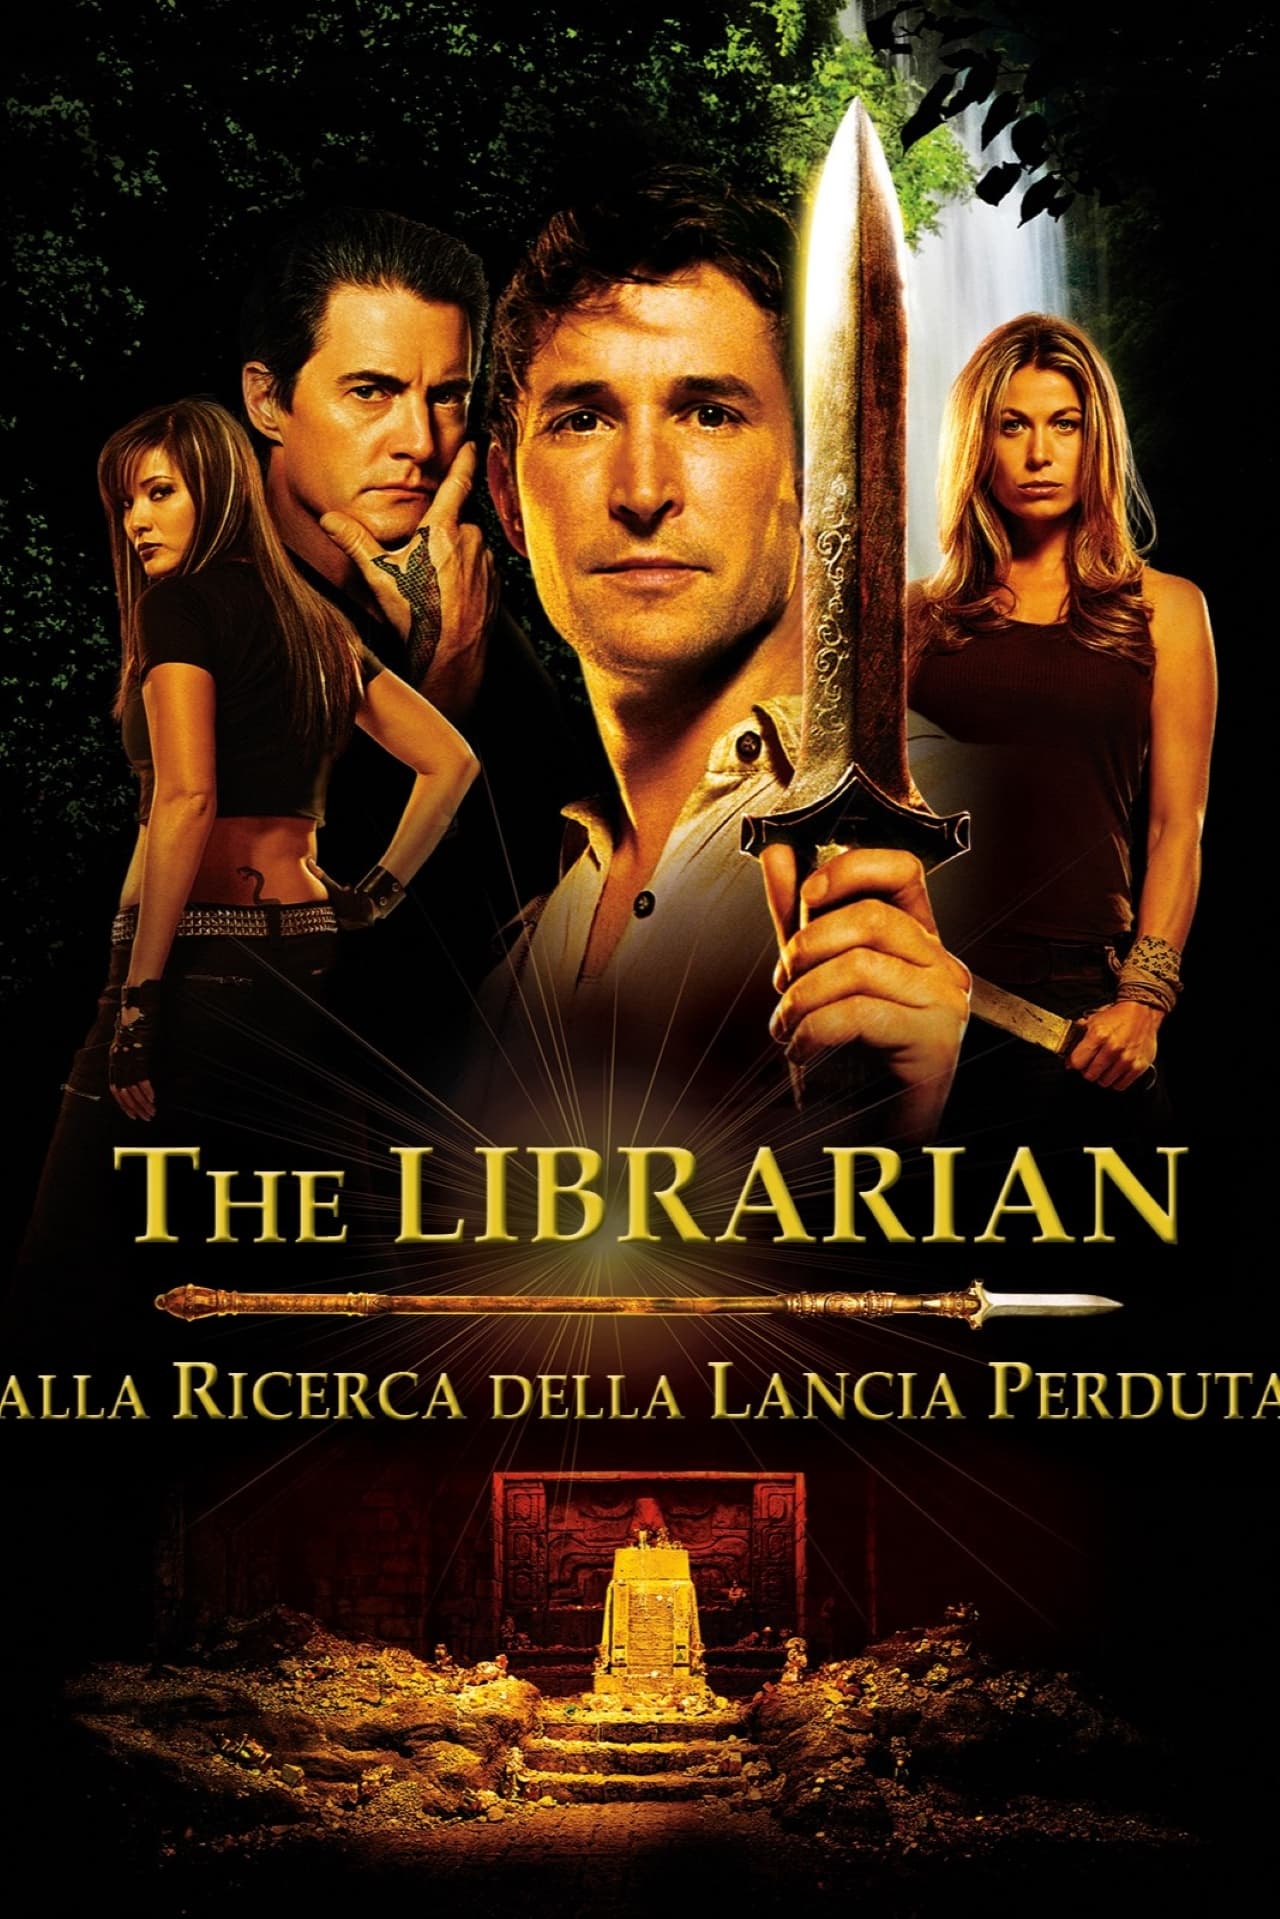 The Librarian - Alla ricerca della lancia perduta film